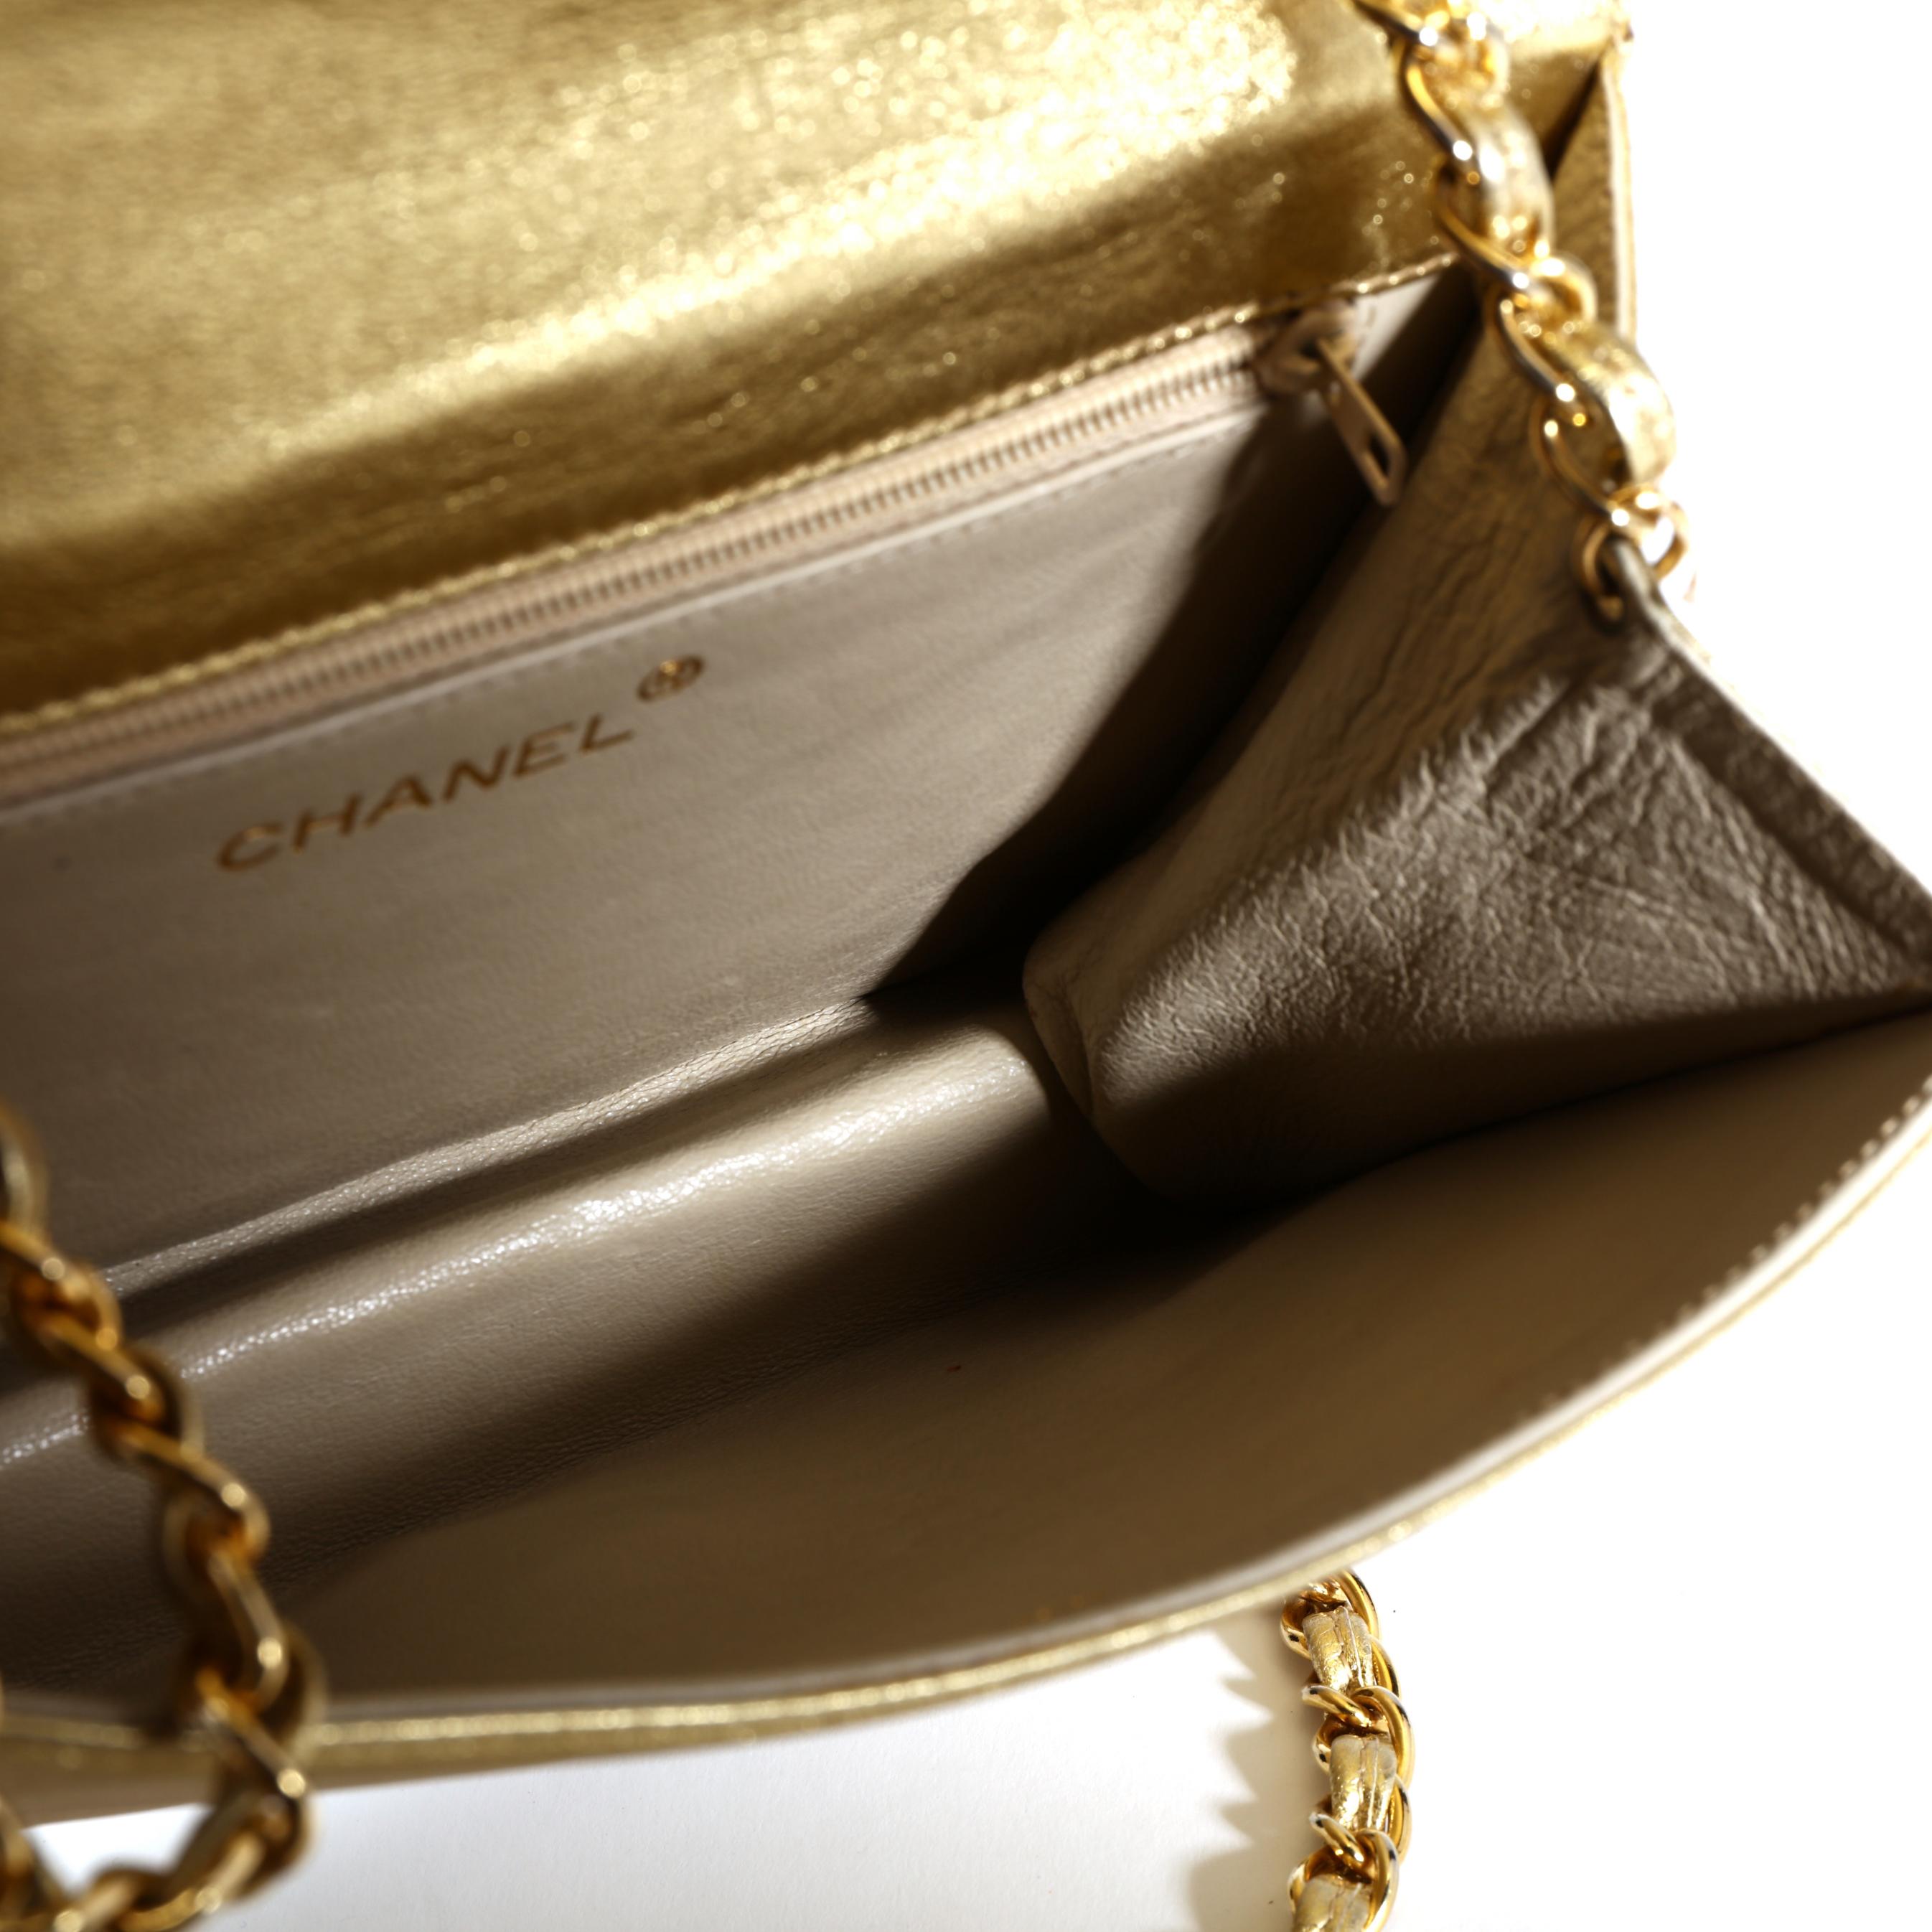 Vintage Metallic Gold Flap Shoulder Bag, Chanel (Lot 1164 - Important  Winter AuctionDec 7, 2019, 10:00am)